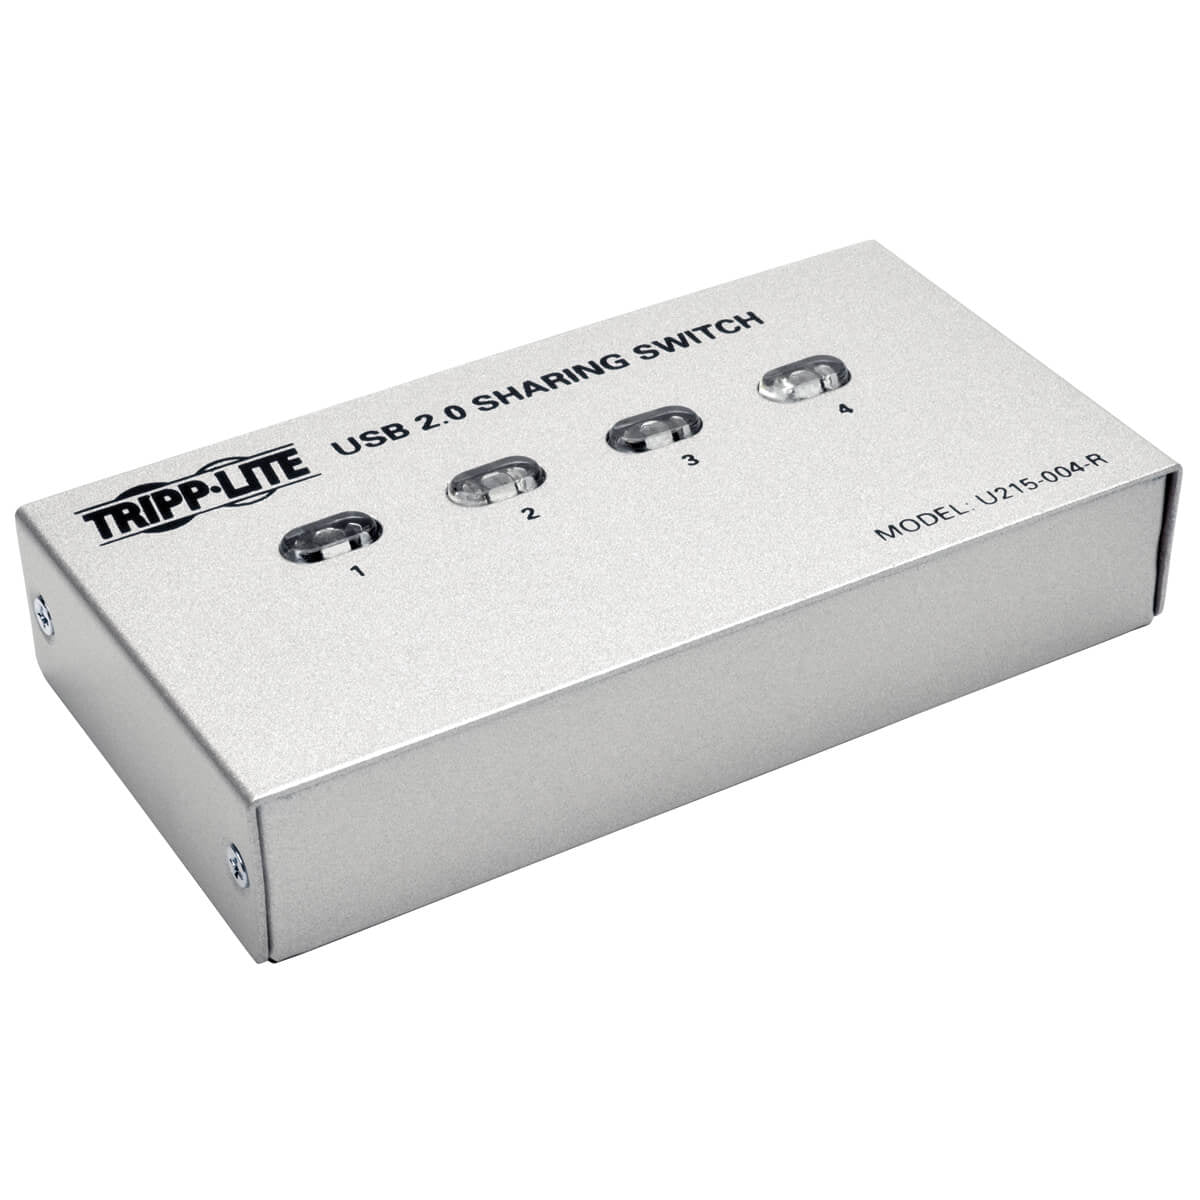 U215-004-R - Tripp Lite - interface hub USB 2.0 480 Mbit/s Silver